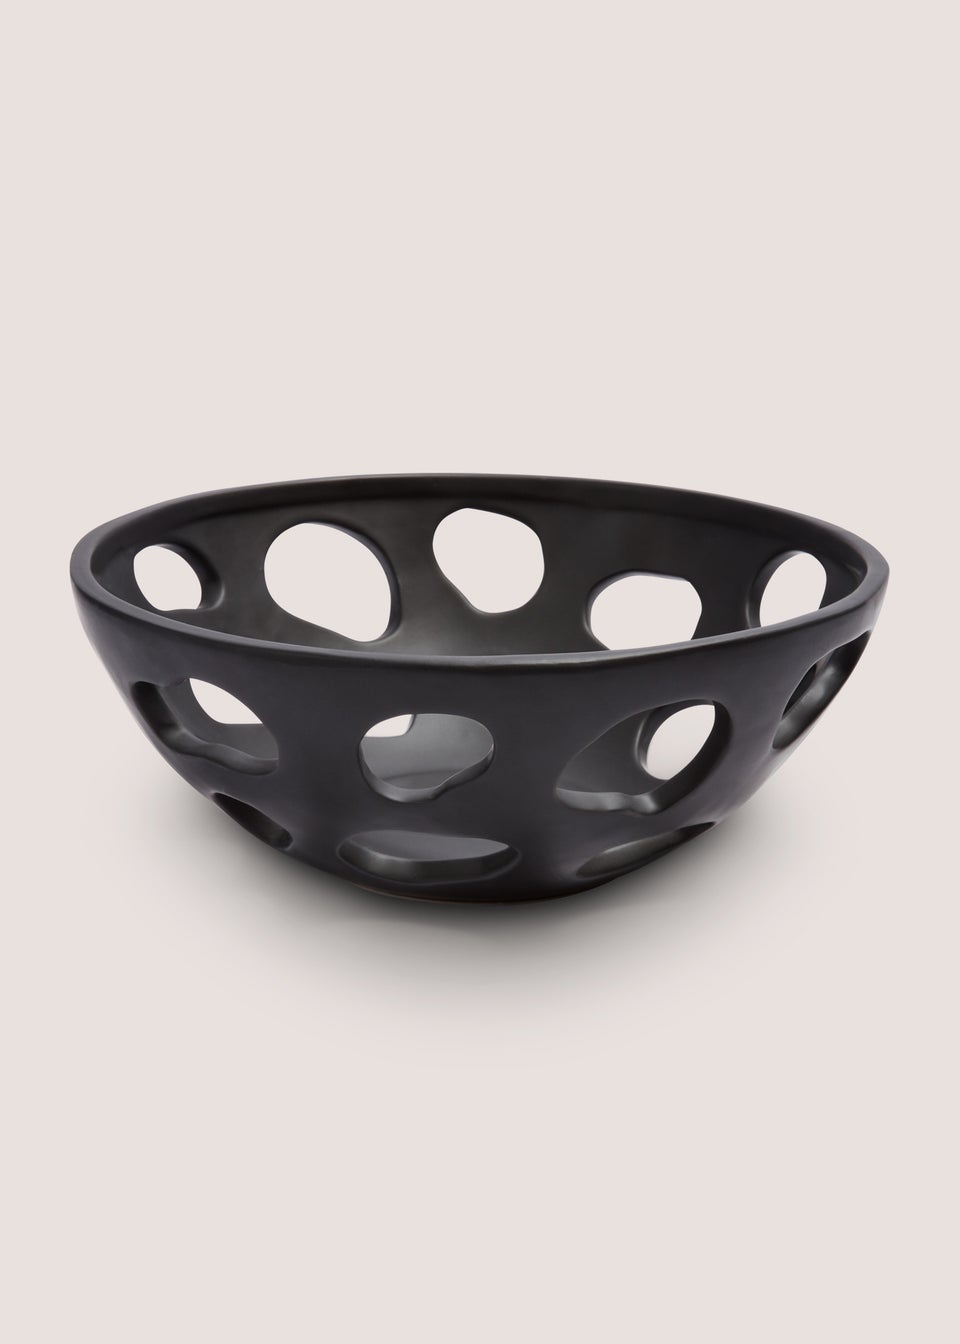 Black Ceramic Bowl (26cm x 26cm x 10cm)